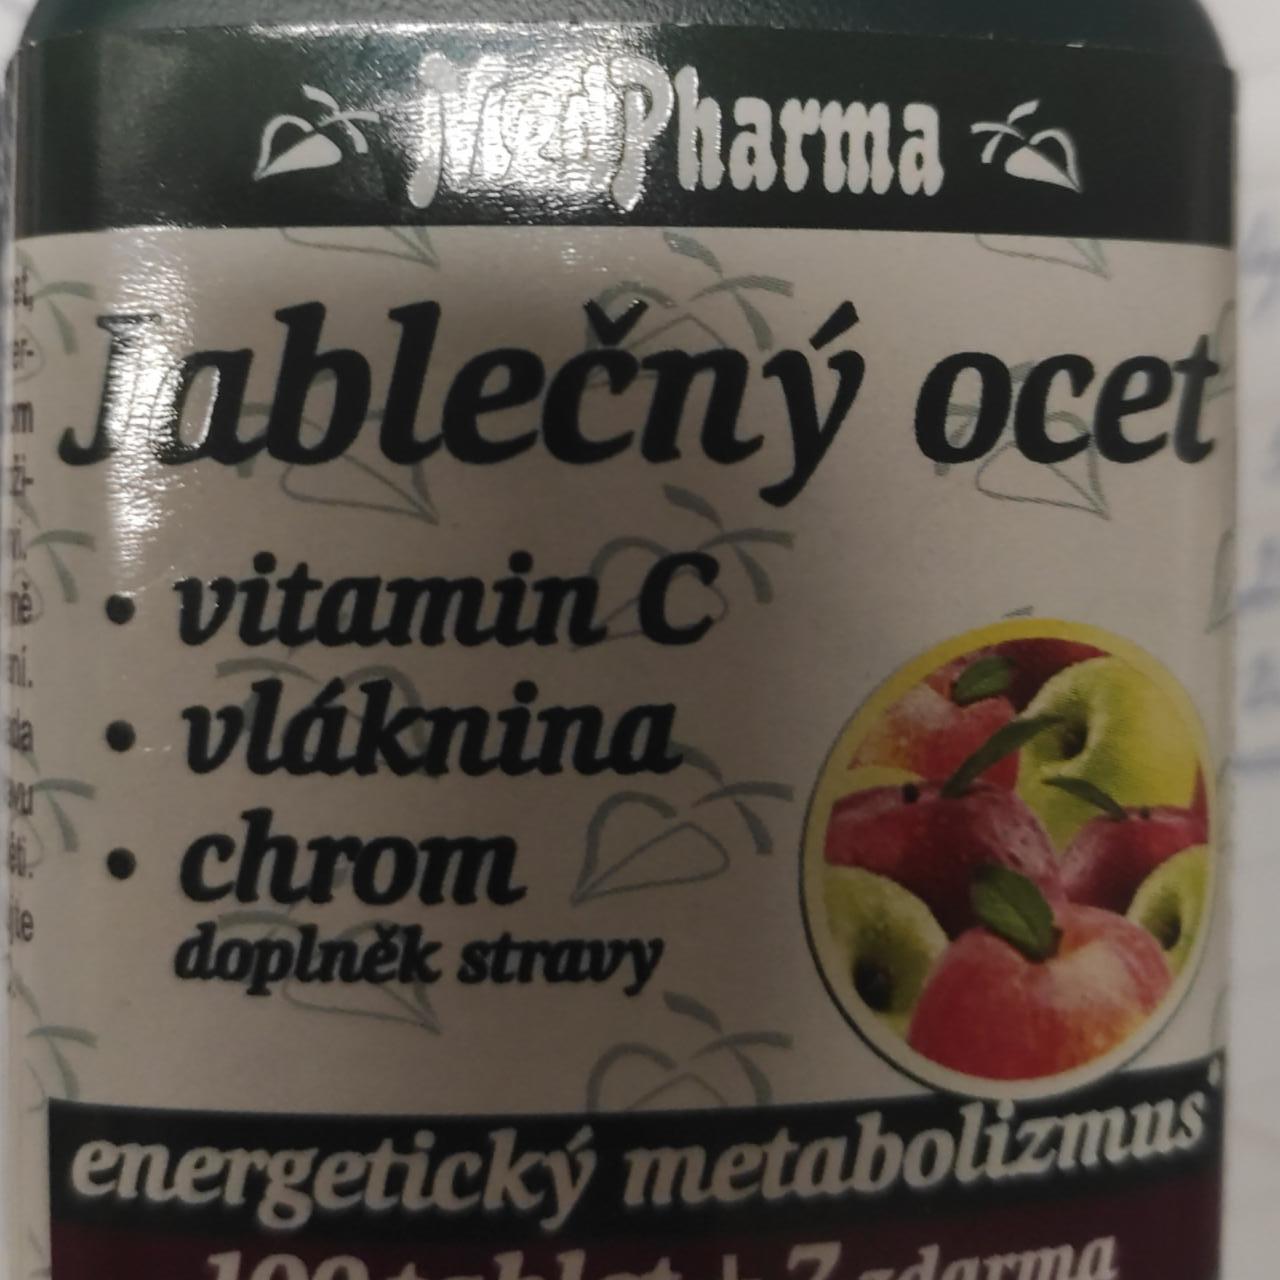 Fotografie - Jablečný ocet, vitamin C, vláknina, chrom MedPharma